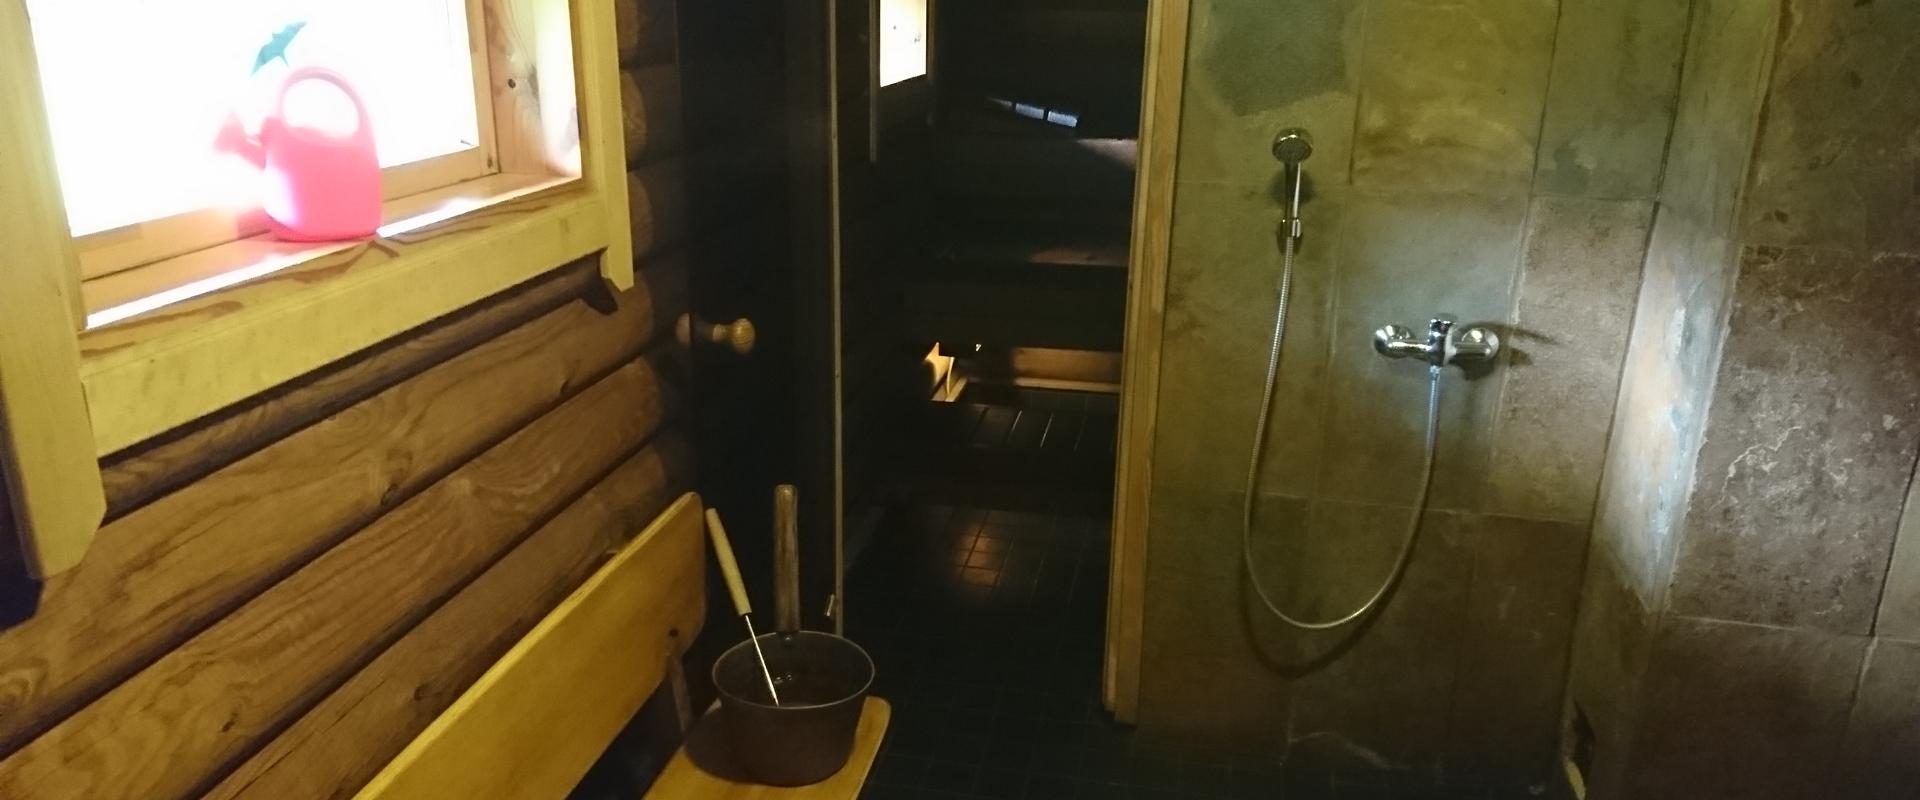 Markna Tourist Farm Sauna House - wood heated sauna and a shower room.